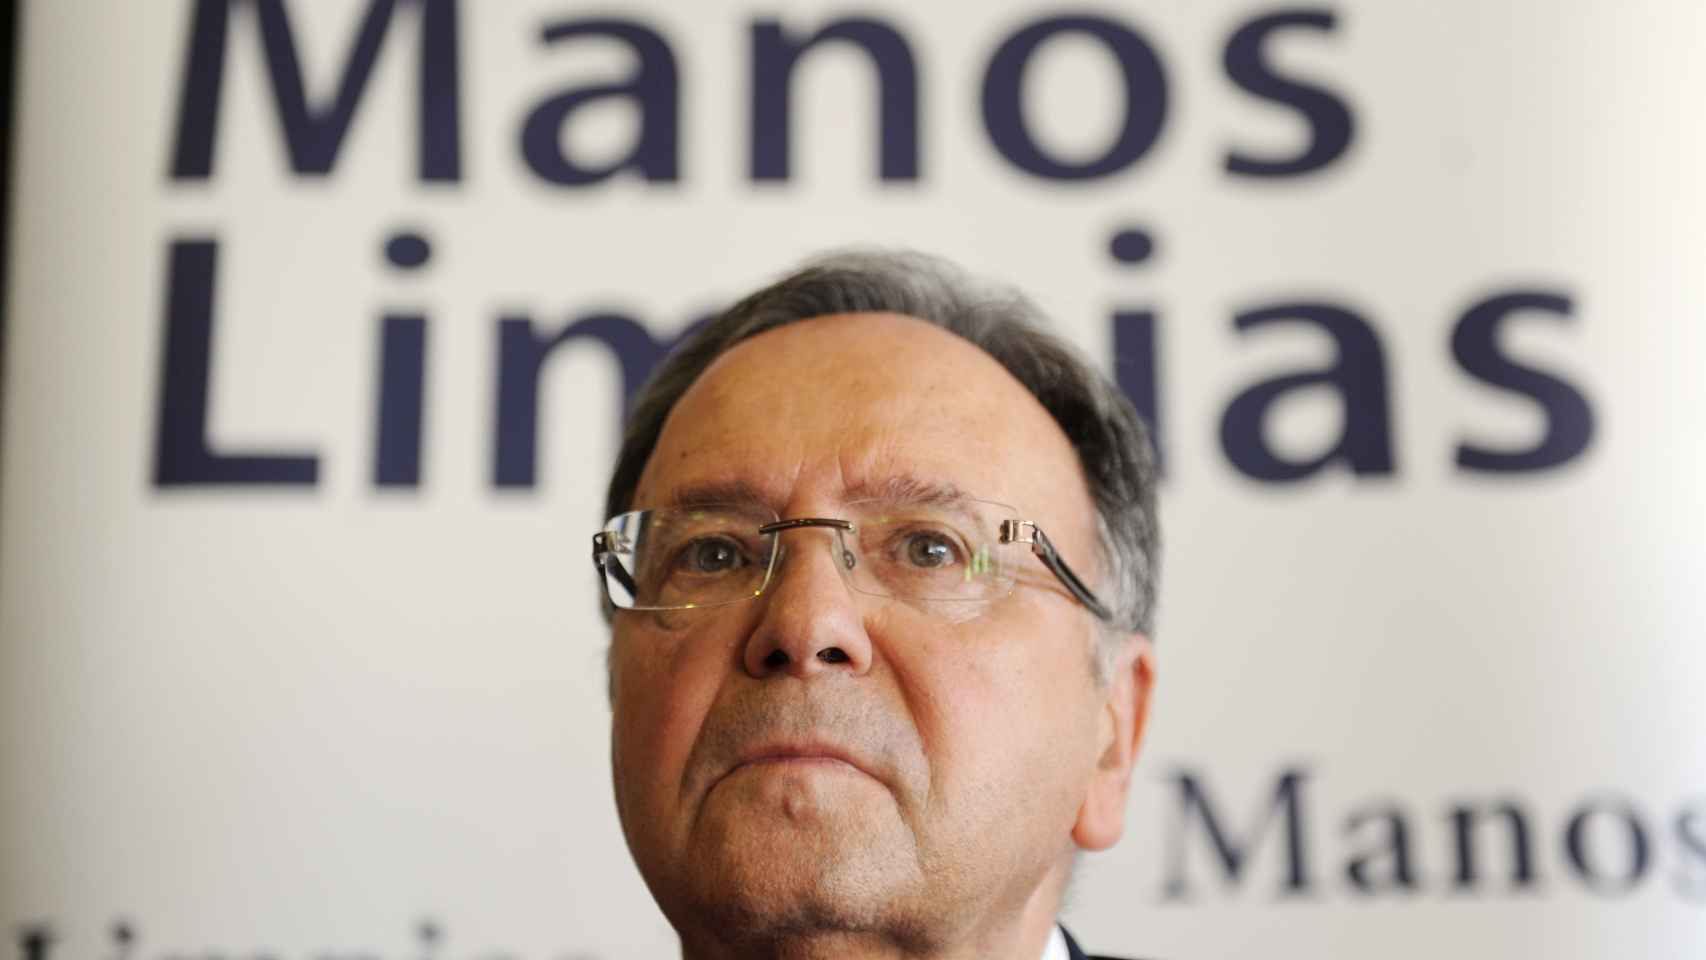 El secretario general de Manos Limpias, Miguel Bernad.